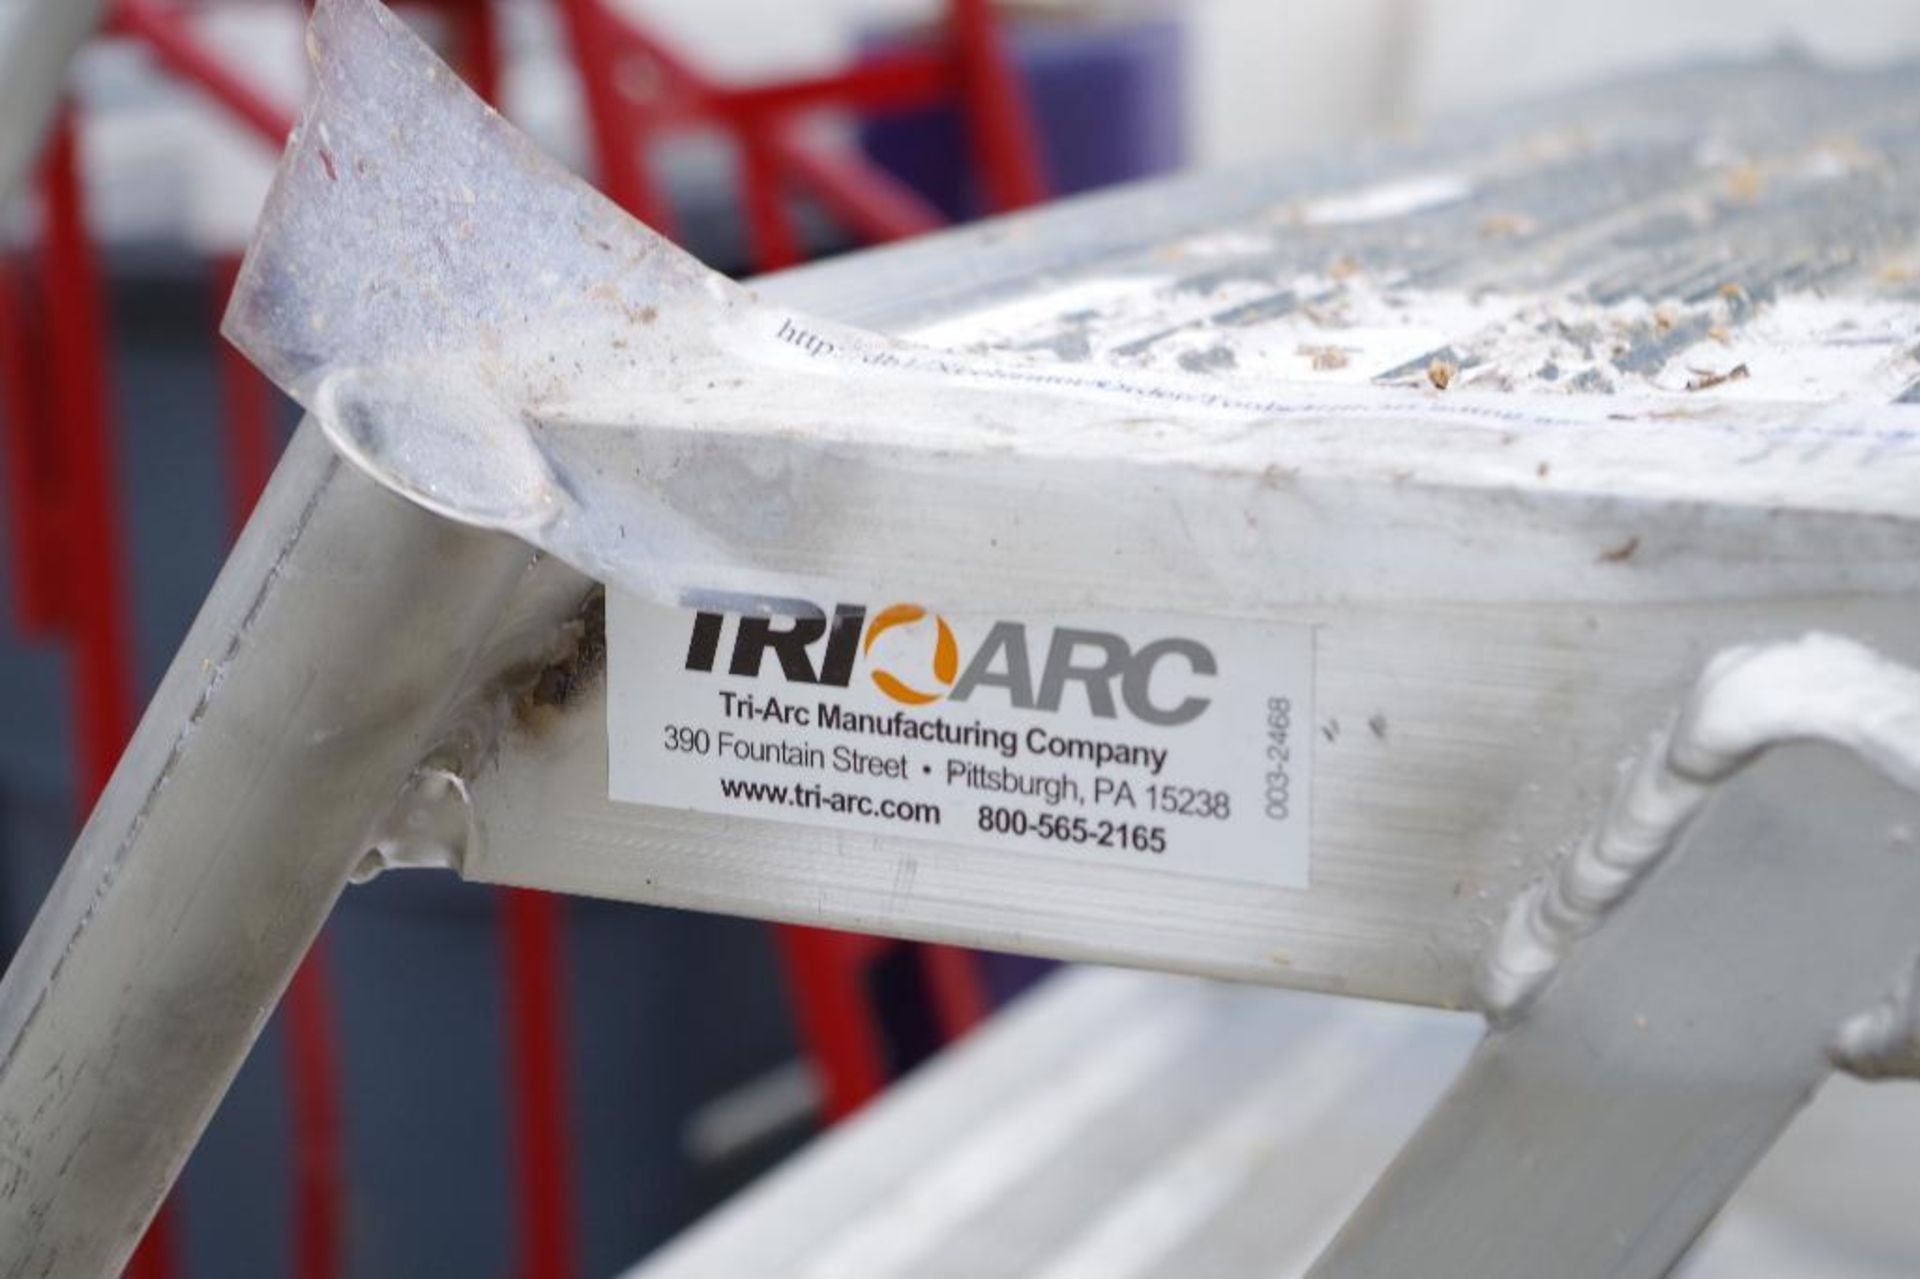 TRI ARC Aluminum Rolling Platform, 350 lb. Capacity, Made in USA - Bild 2 aus 4